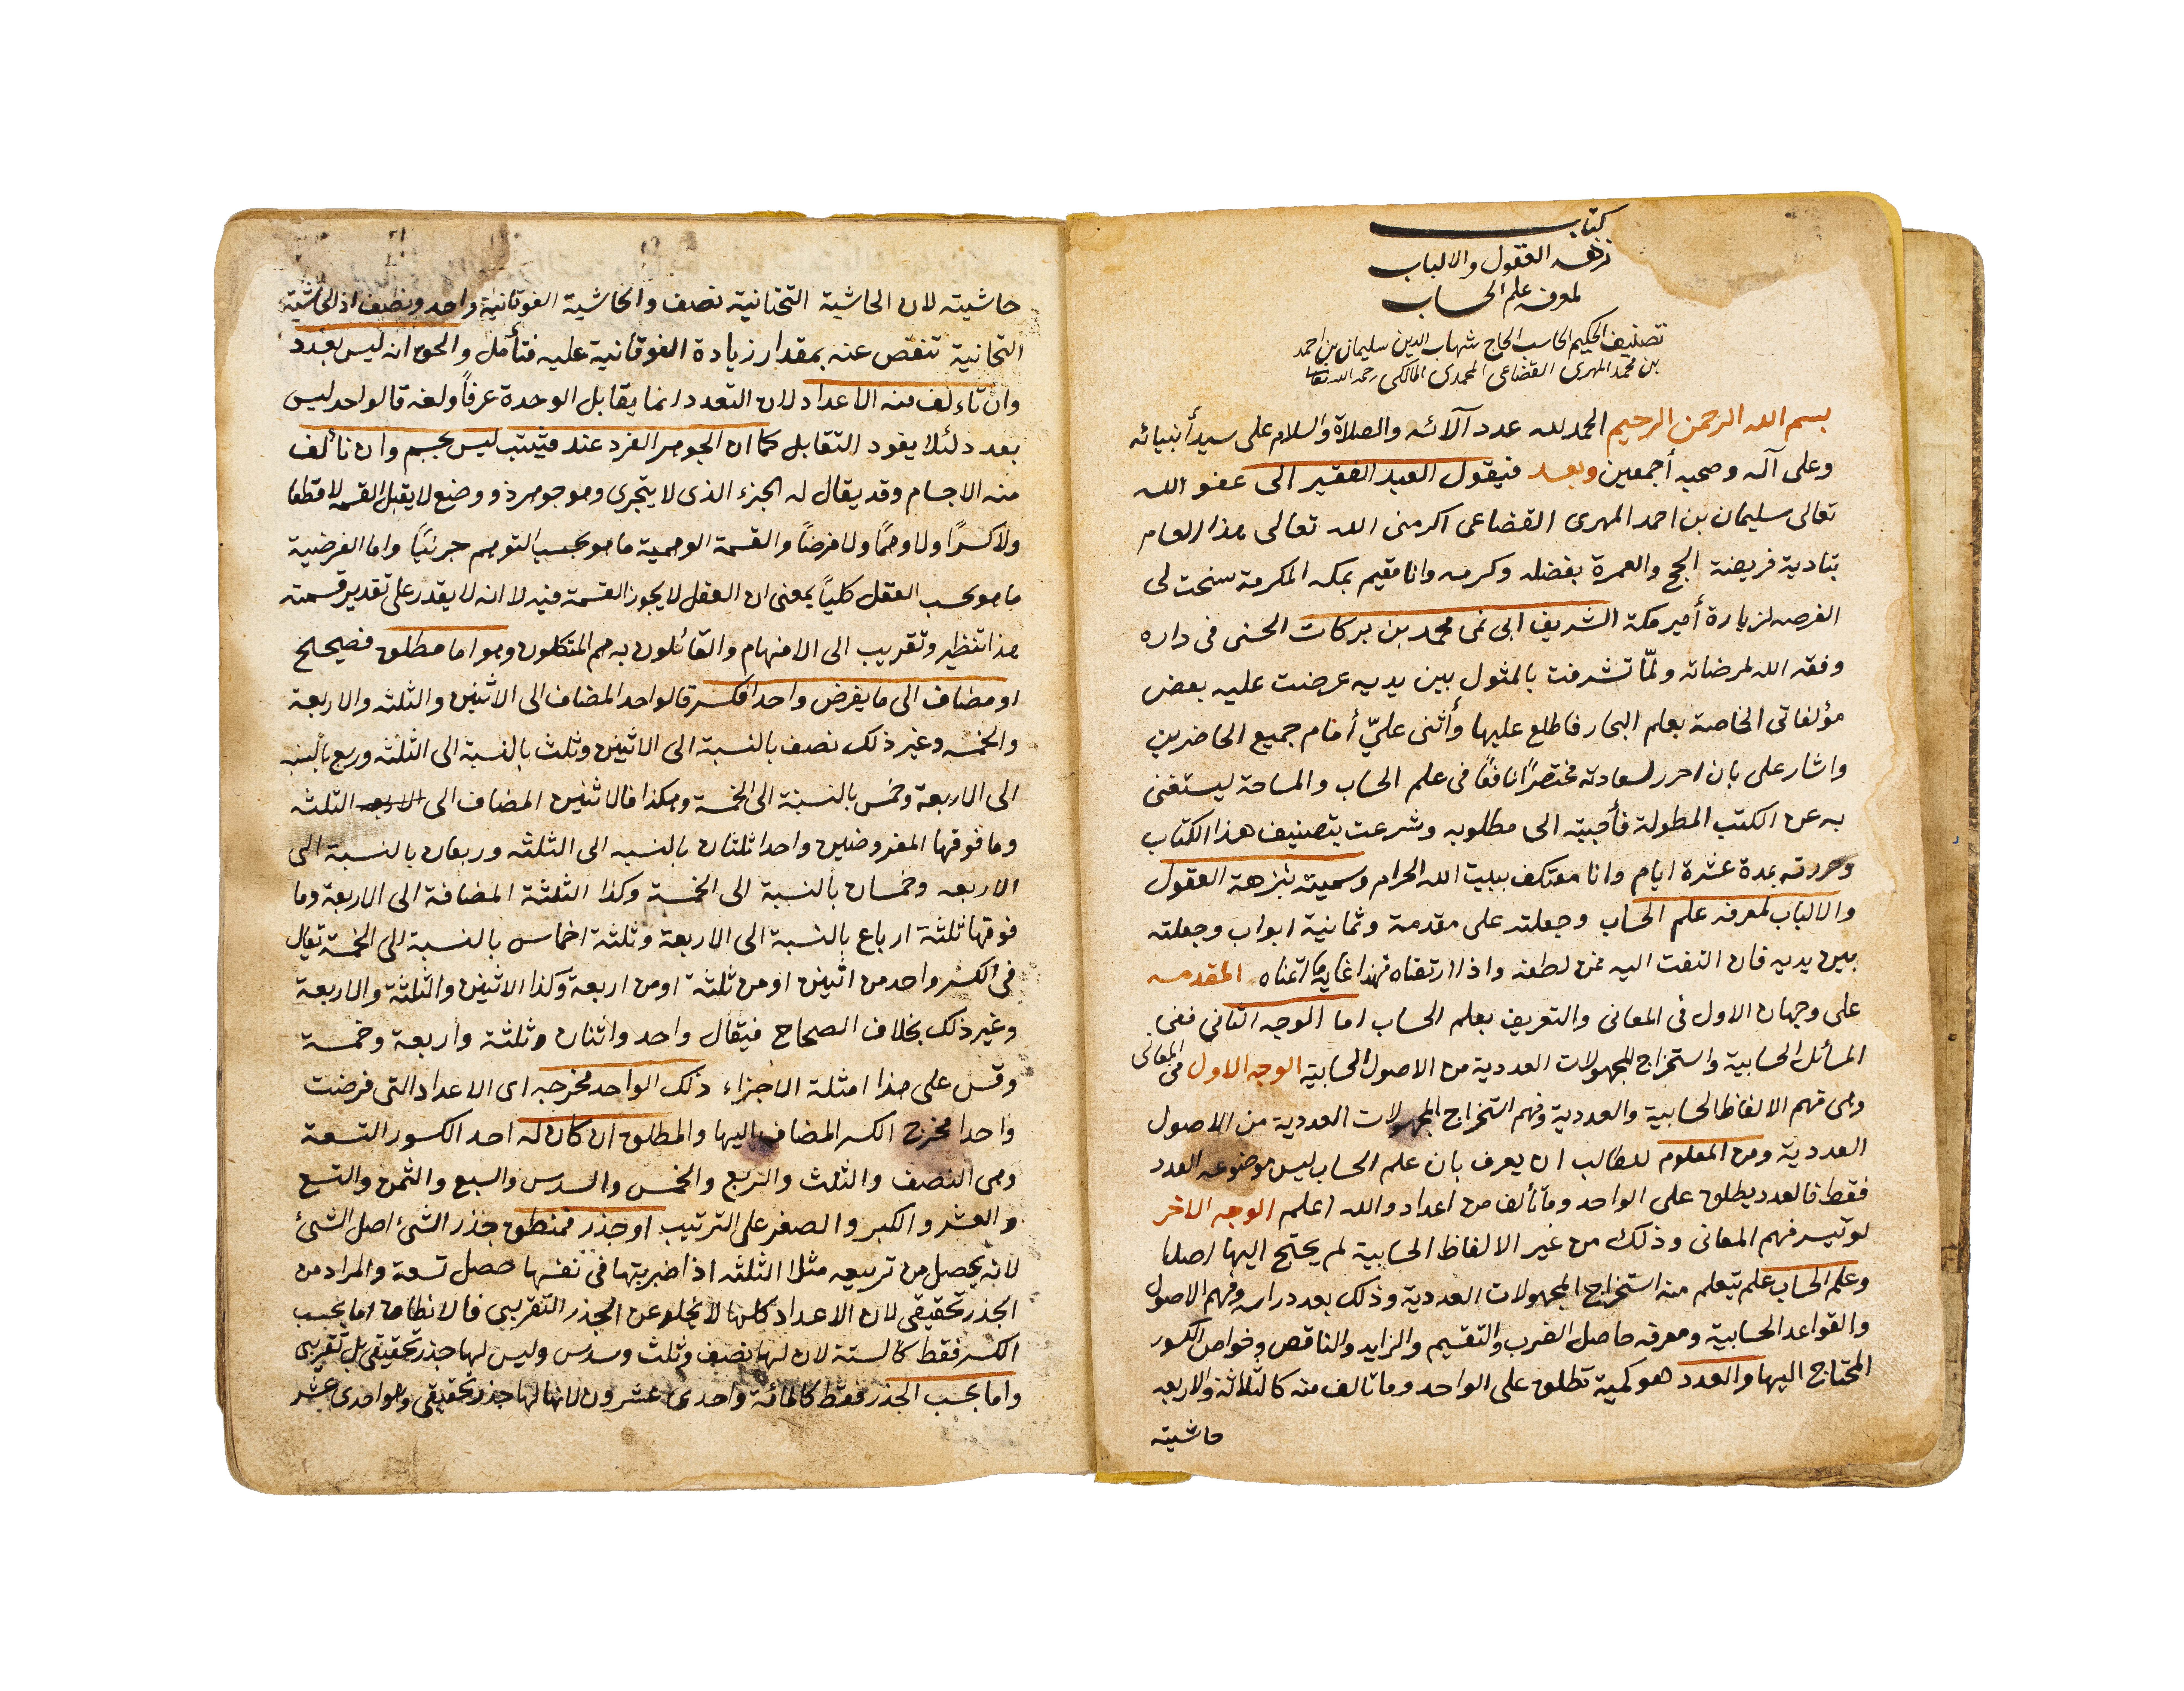 NUZHAT ALEUQUL WA- ALBAB LI MARIFAT AL-HISAB, COPIED BY BARAK BIN MATALK AL-RASHDI IN 1250AH - Image 3 of 7